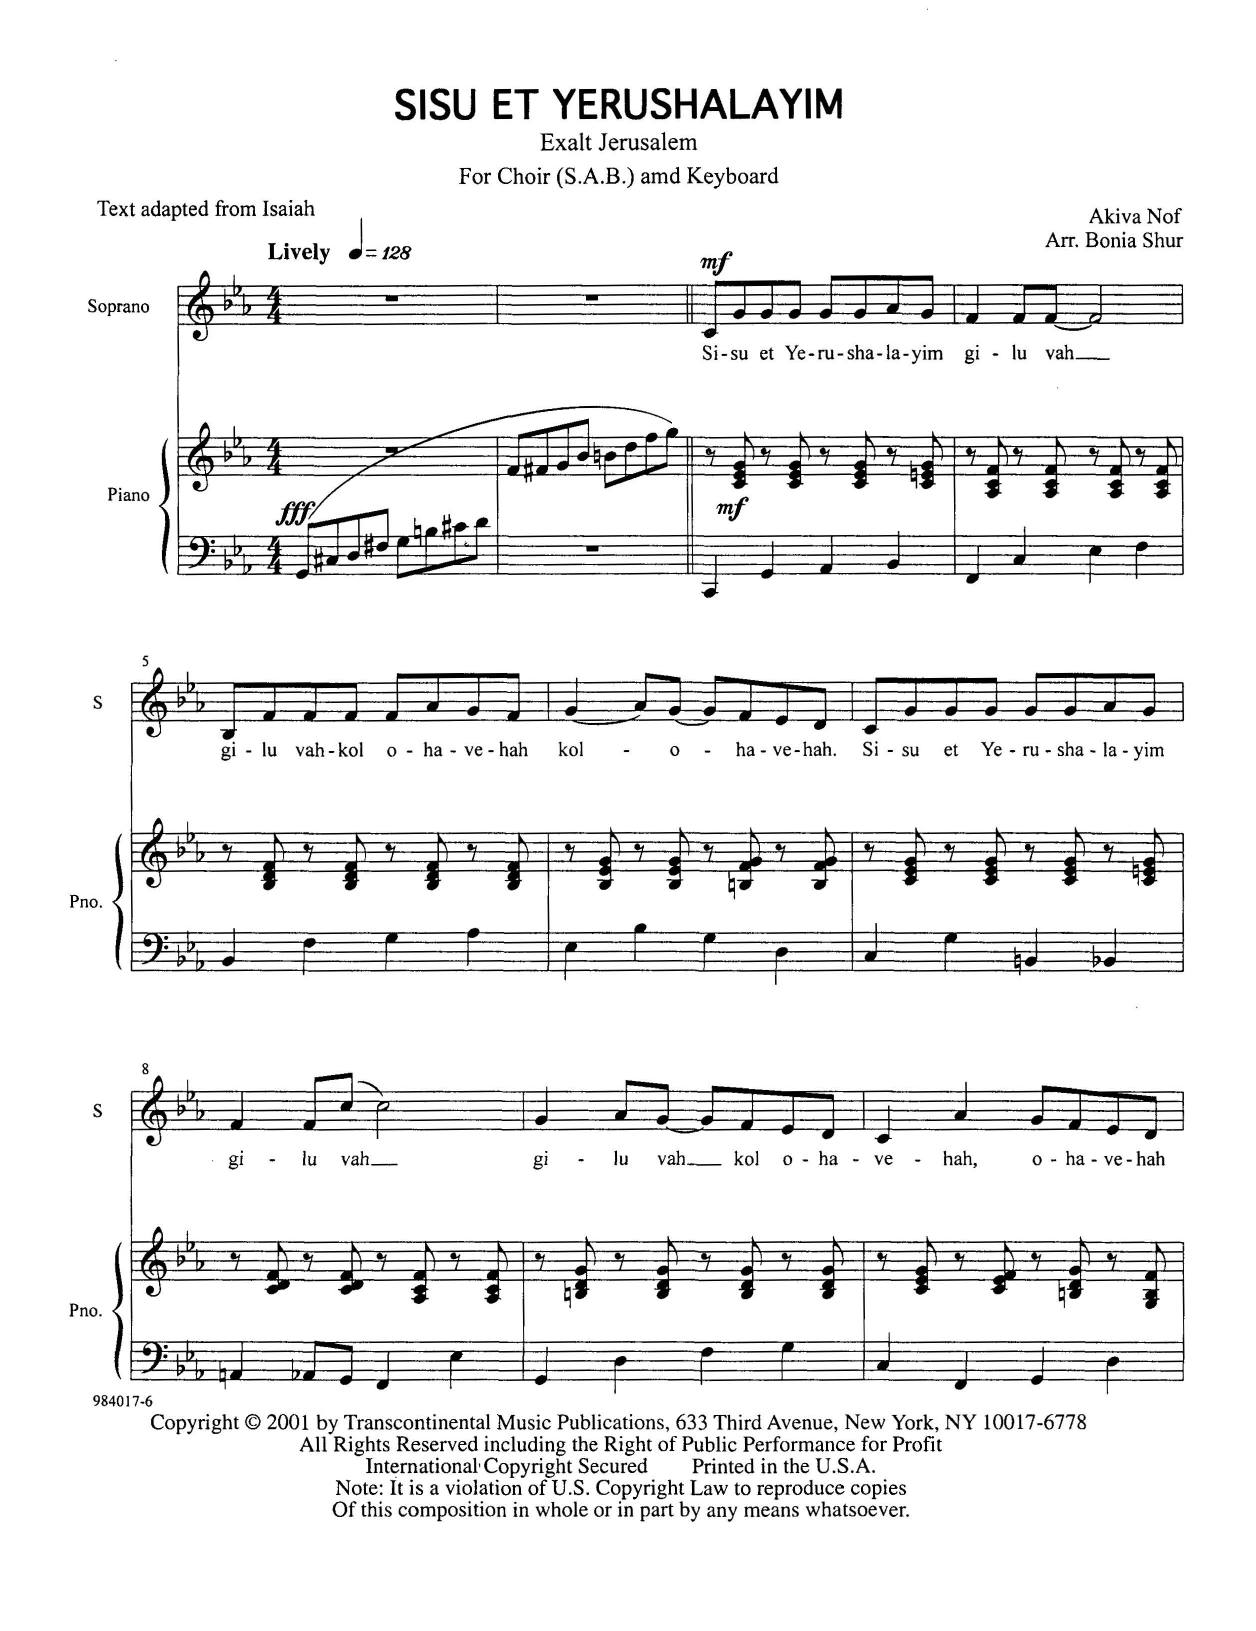 Akiva Nof Sisu Et Yerushalayim (Exalt Jerusalem) Sheet Music Notes & Chords for SAB Choir - Download or Print PDF